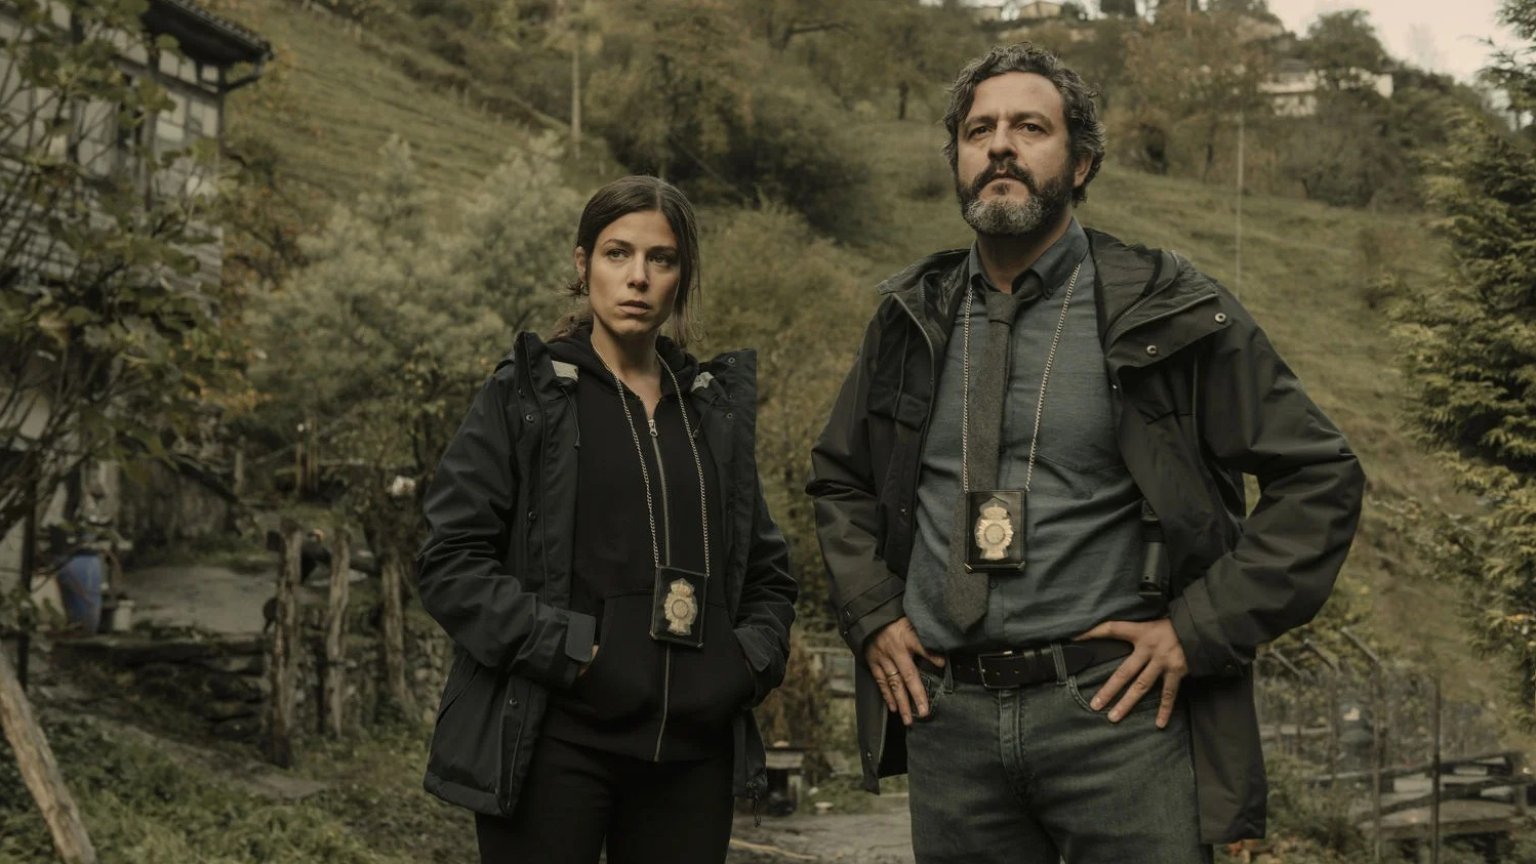 Gloednieuwe Spaanse thriller over twee detectives vanaf februari op Netflix